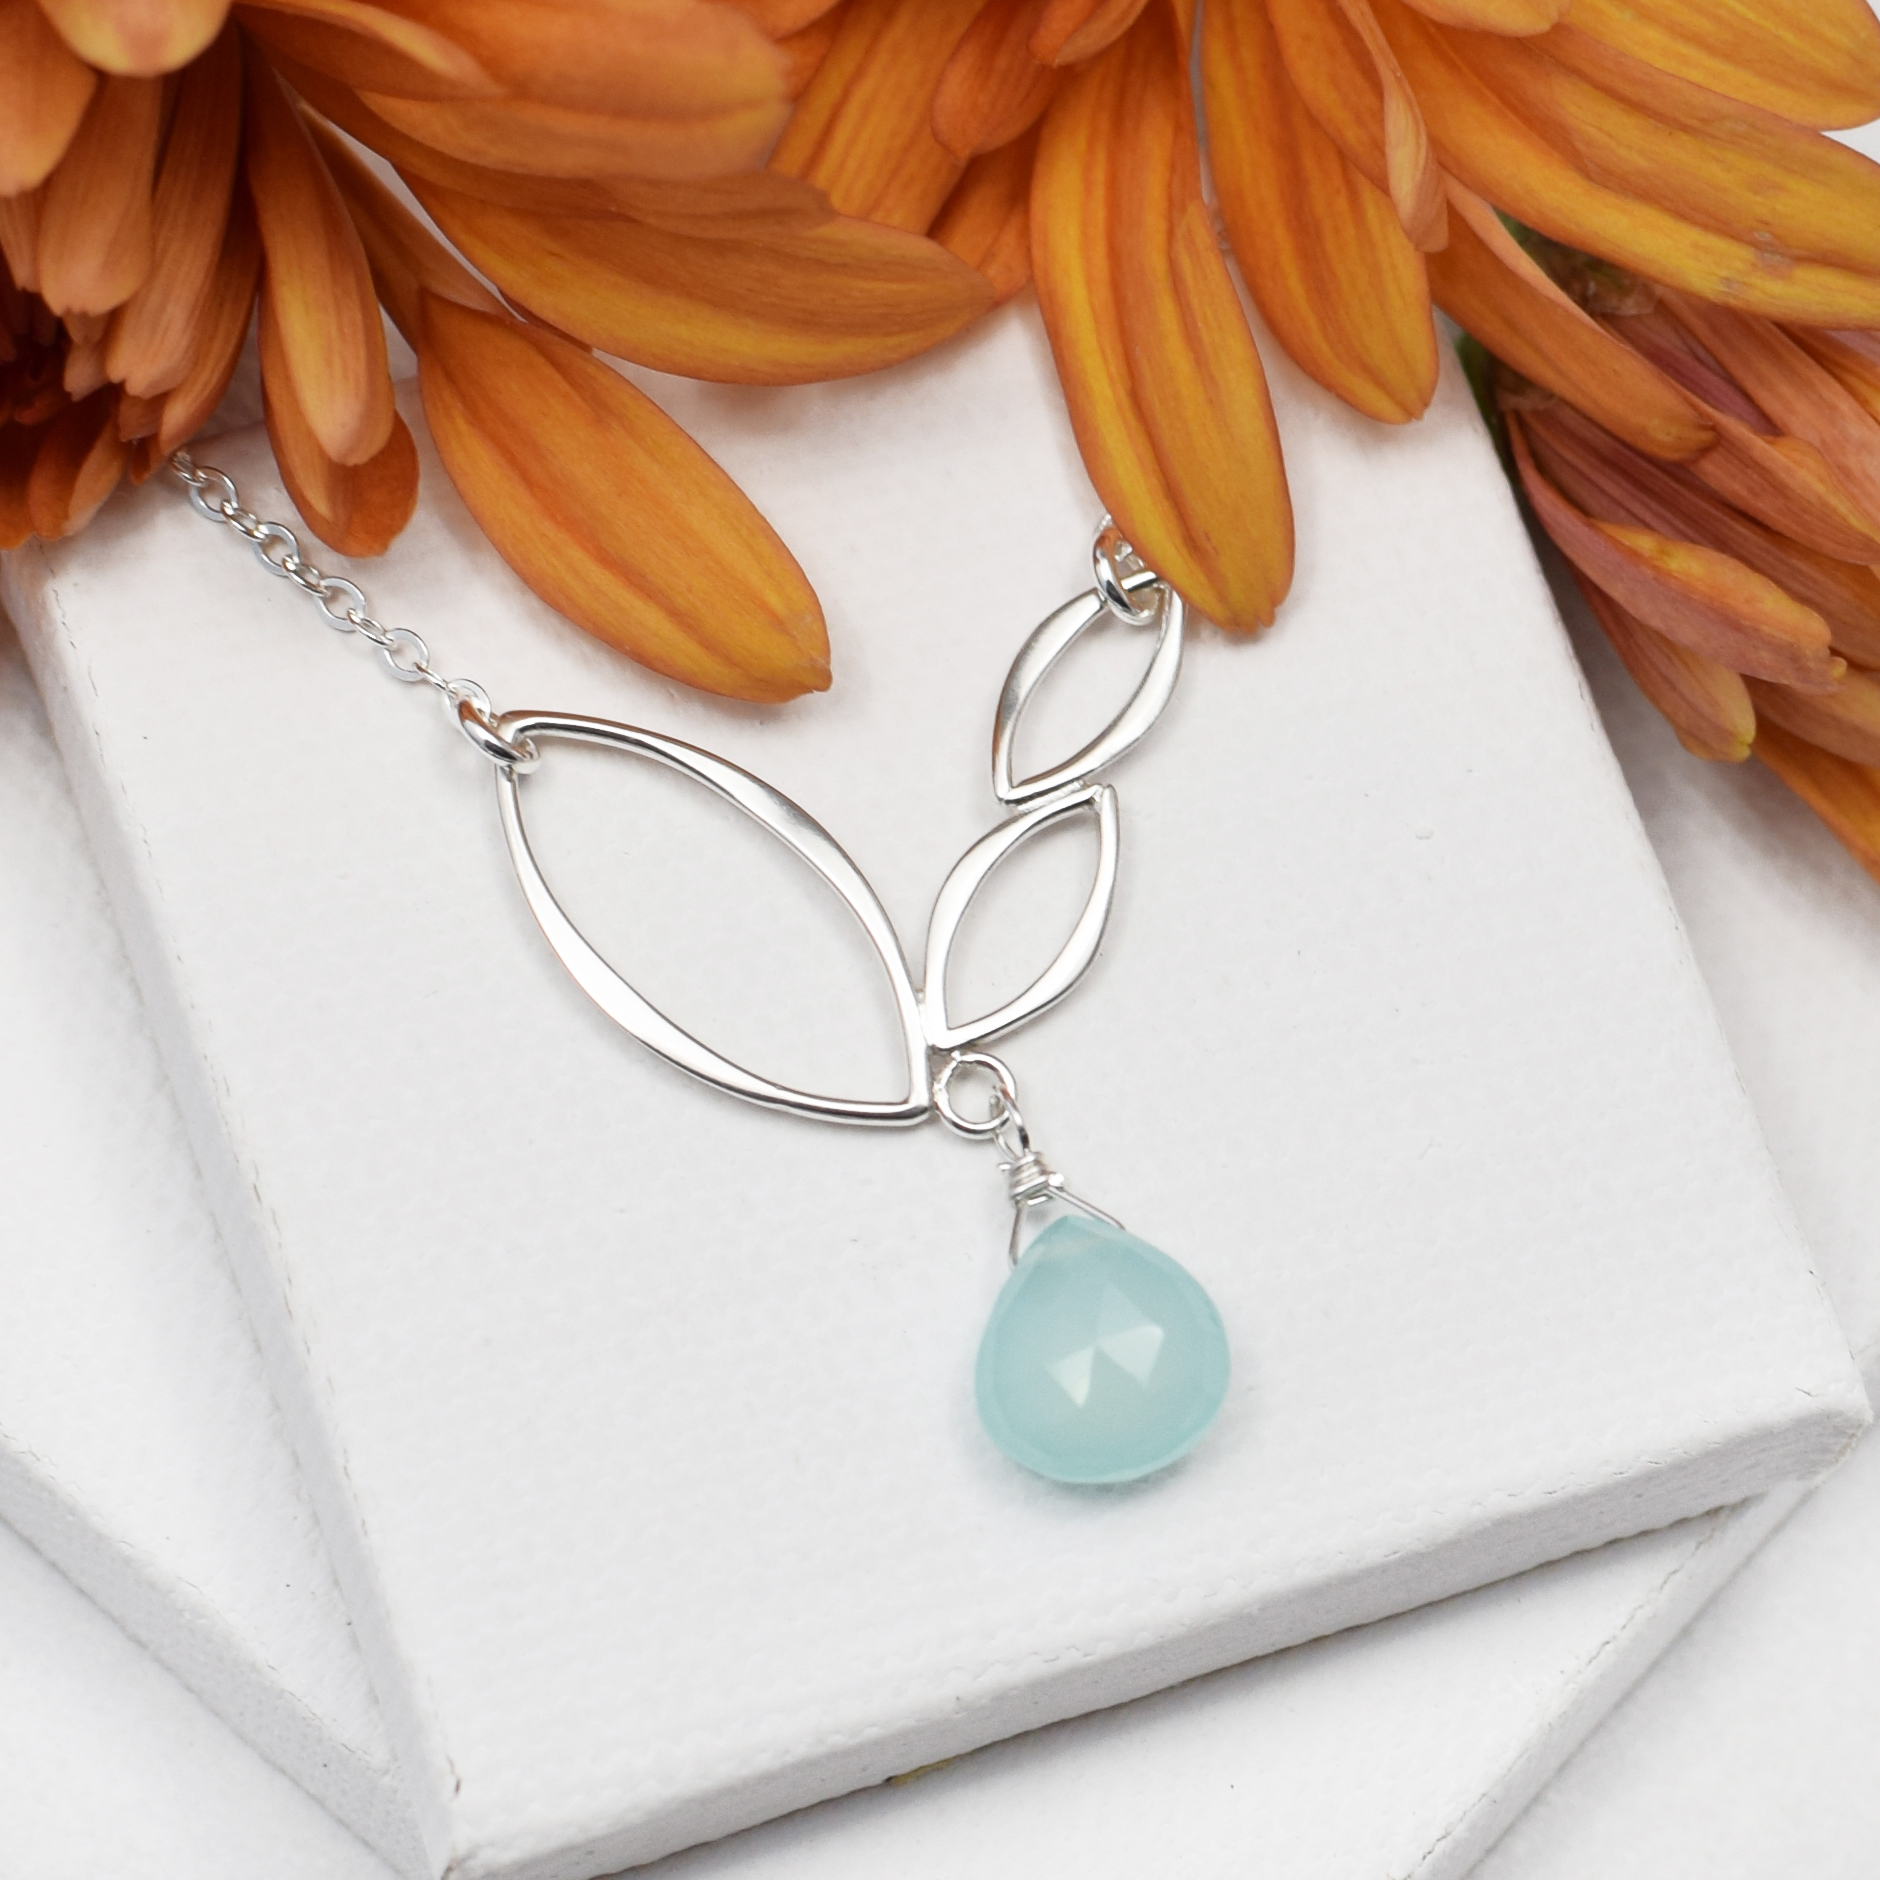 Ella Mini V Leaf Necklace with Gemstone